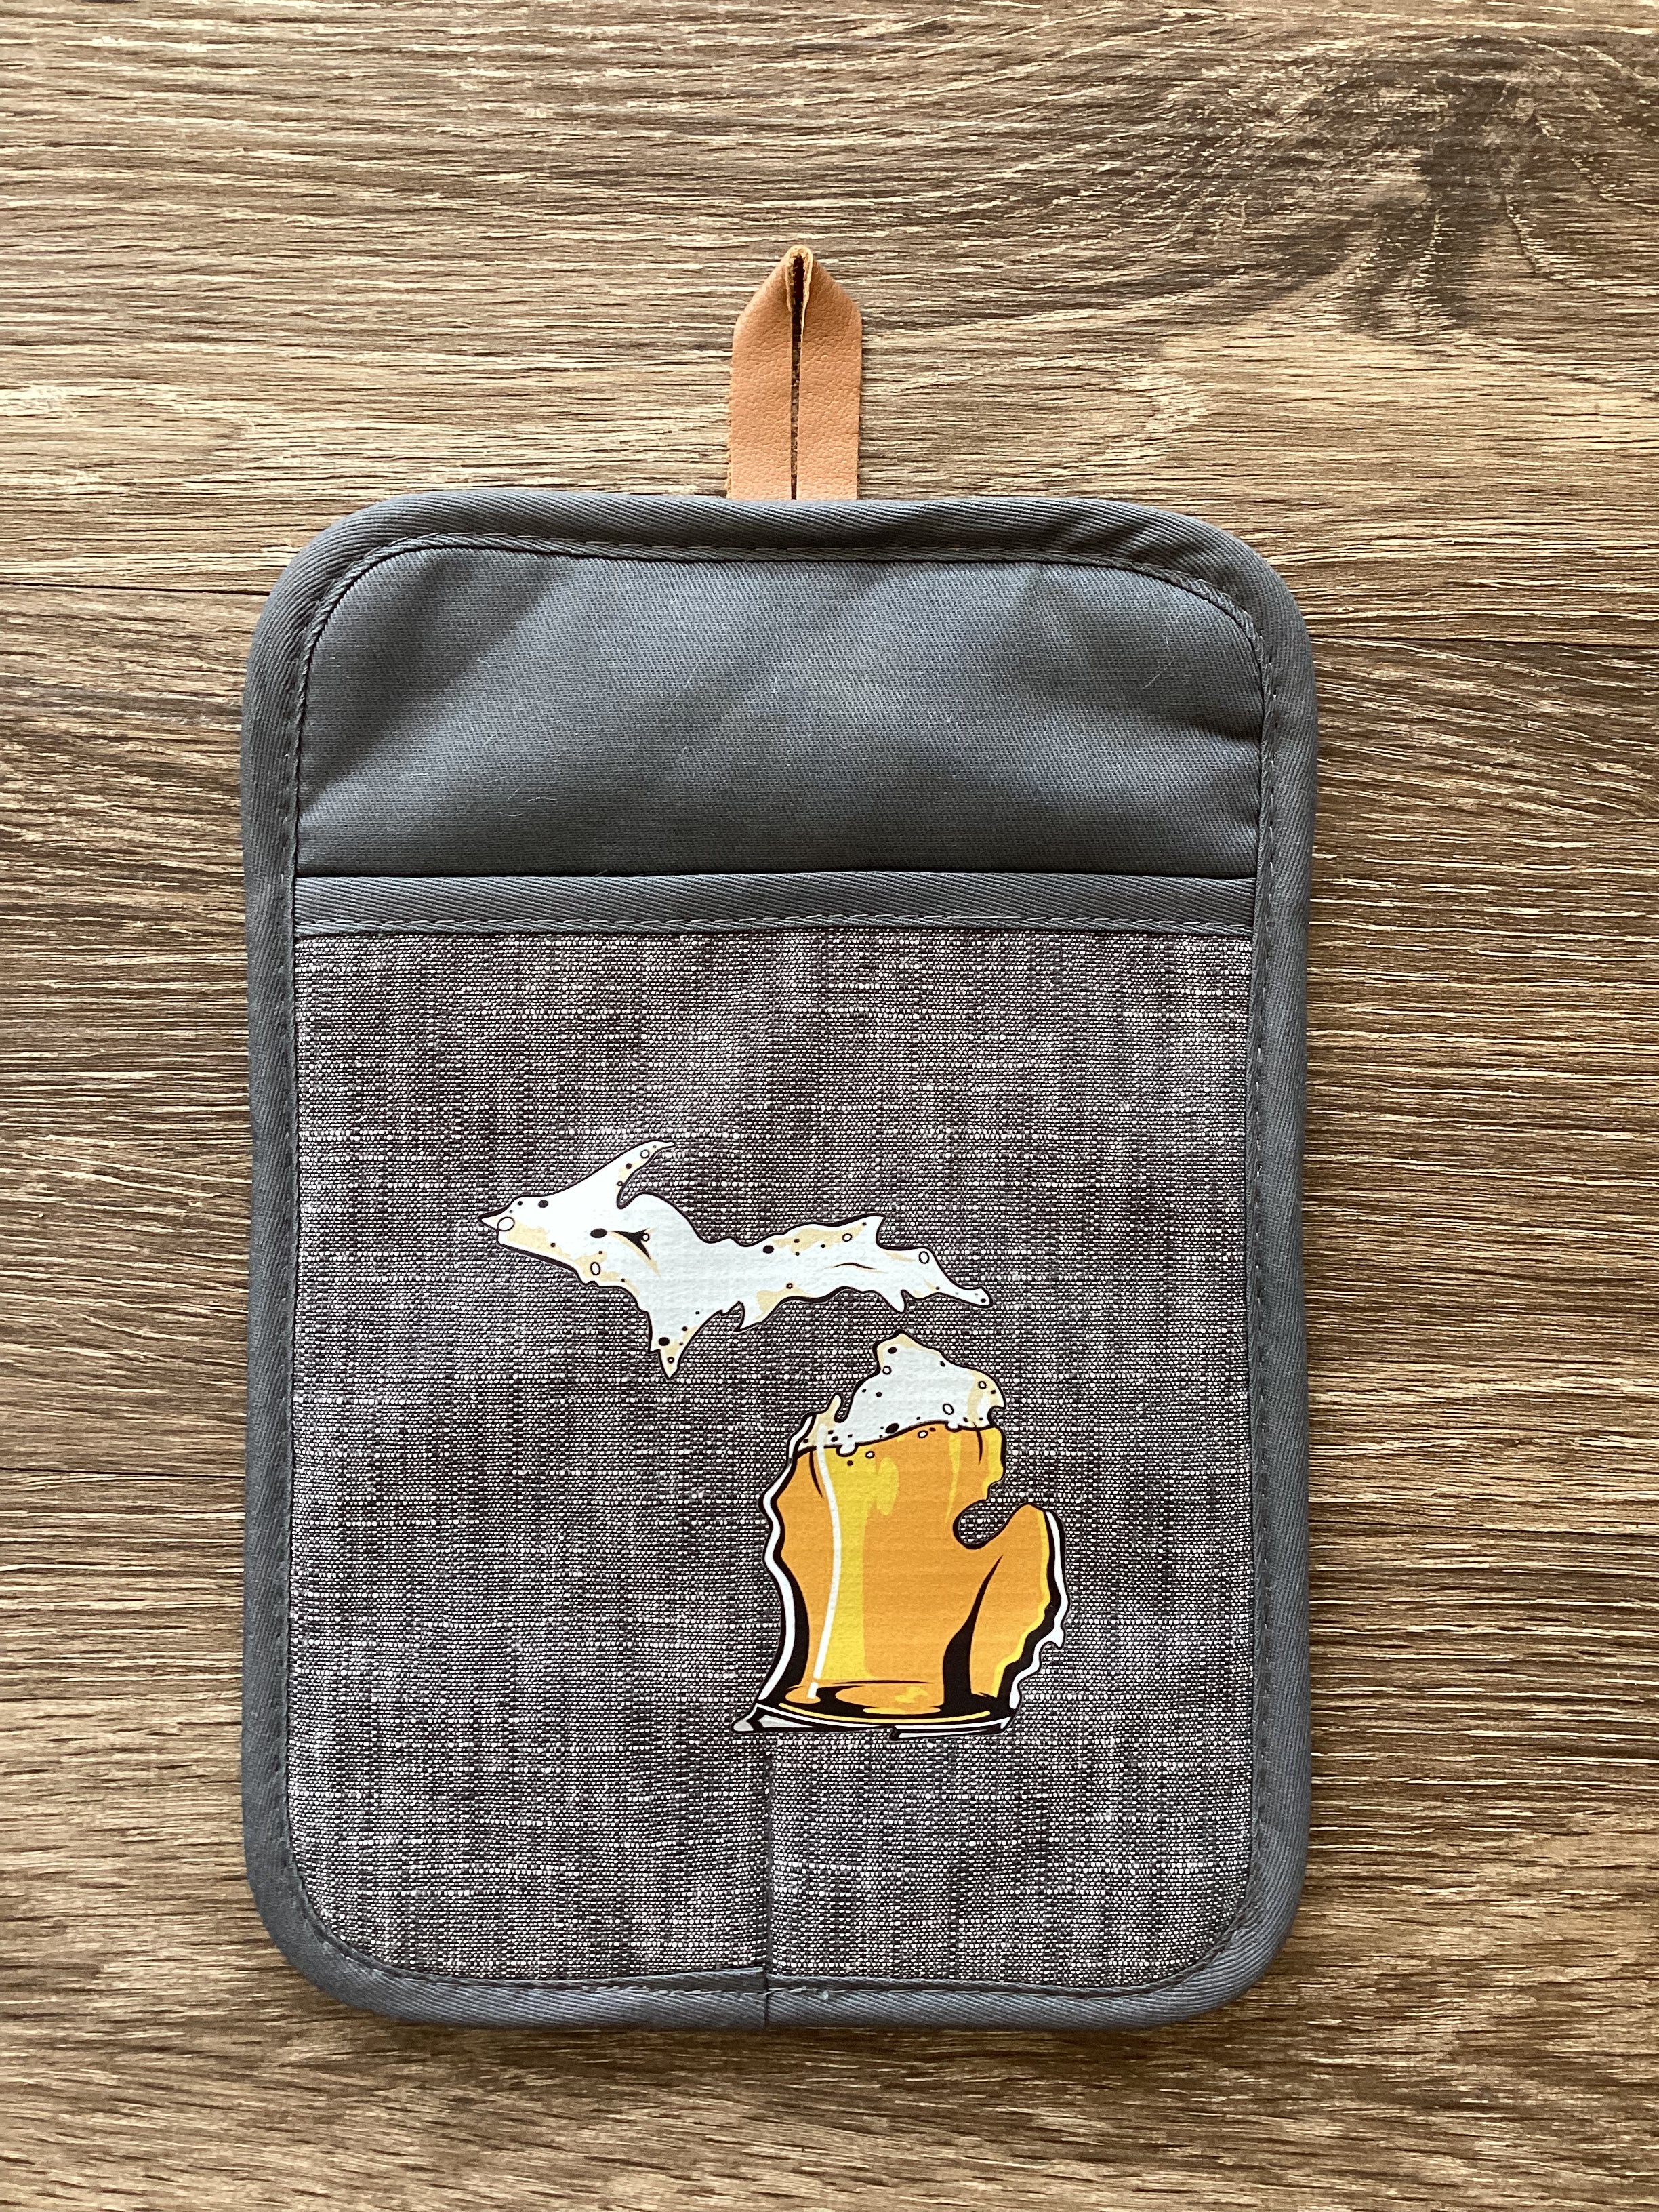 Beer - Michigan - Rectangle Oven Mitt